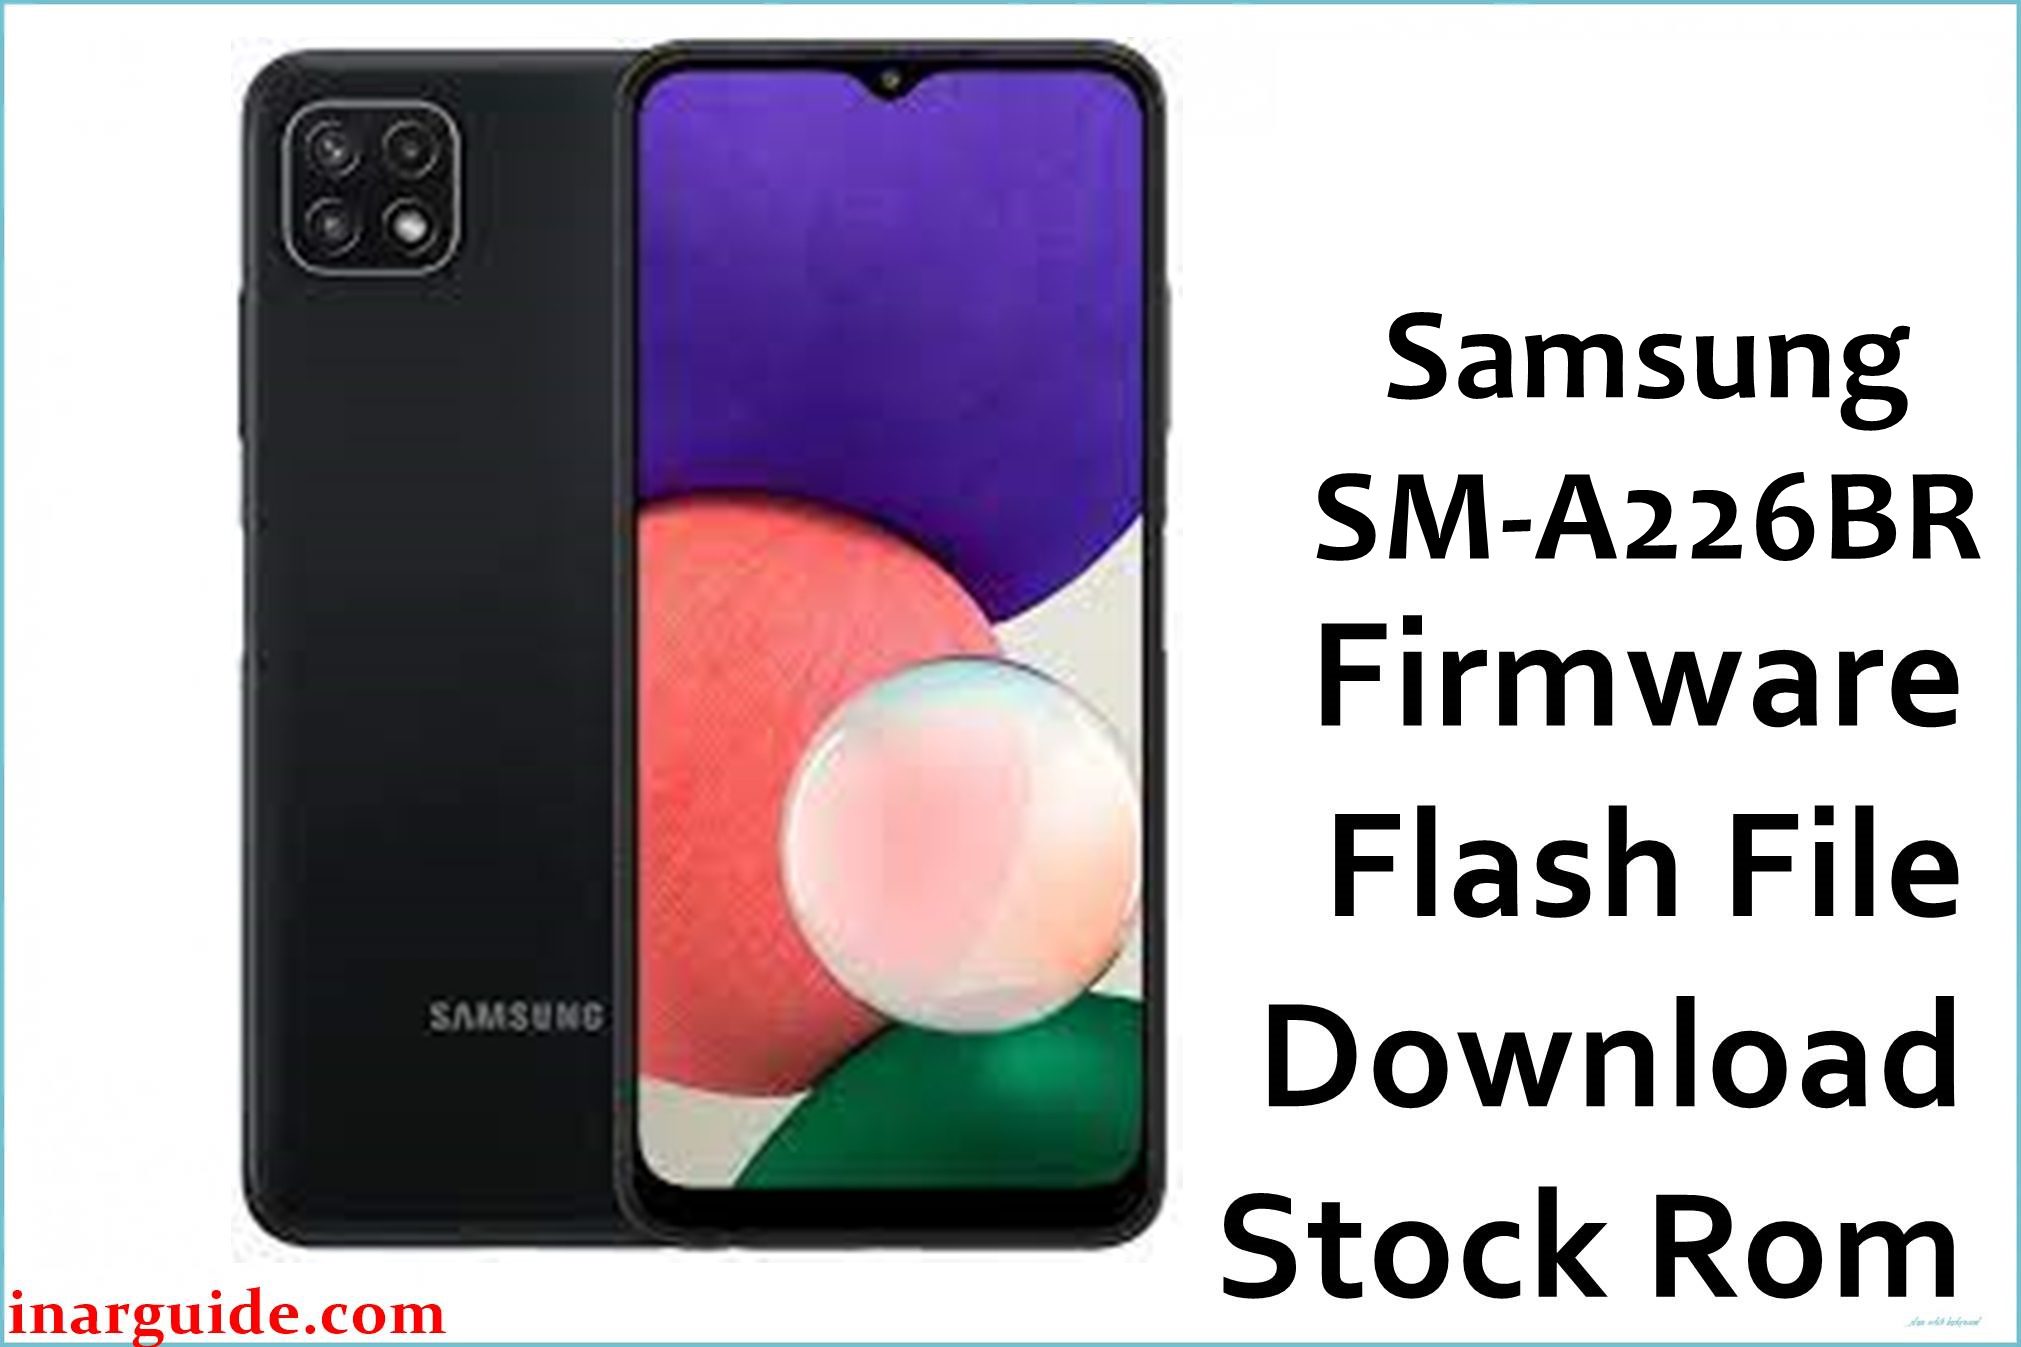 Samsung Galaxy A22 SM-A226BR